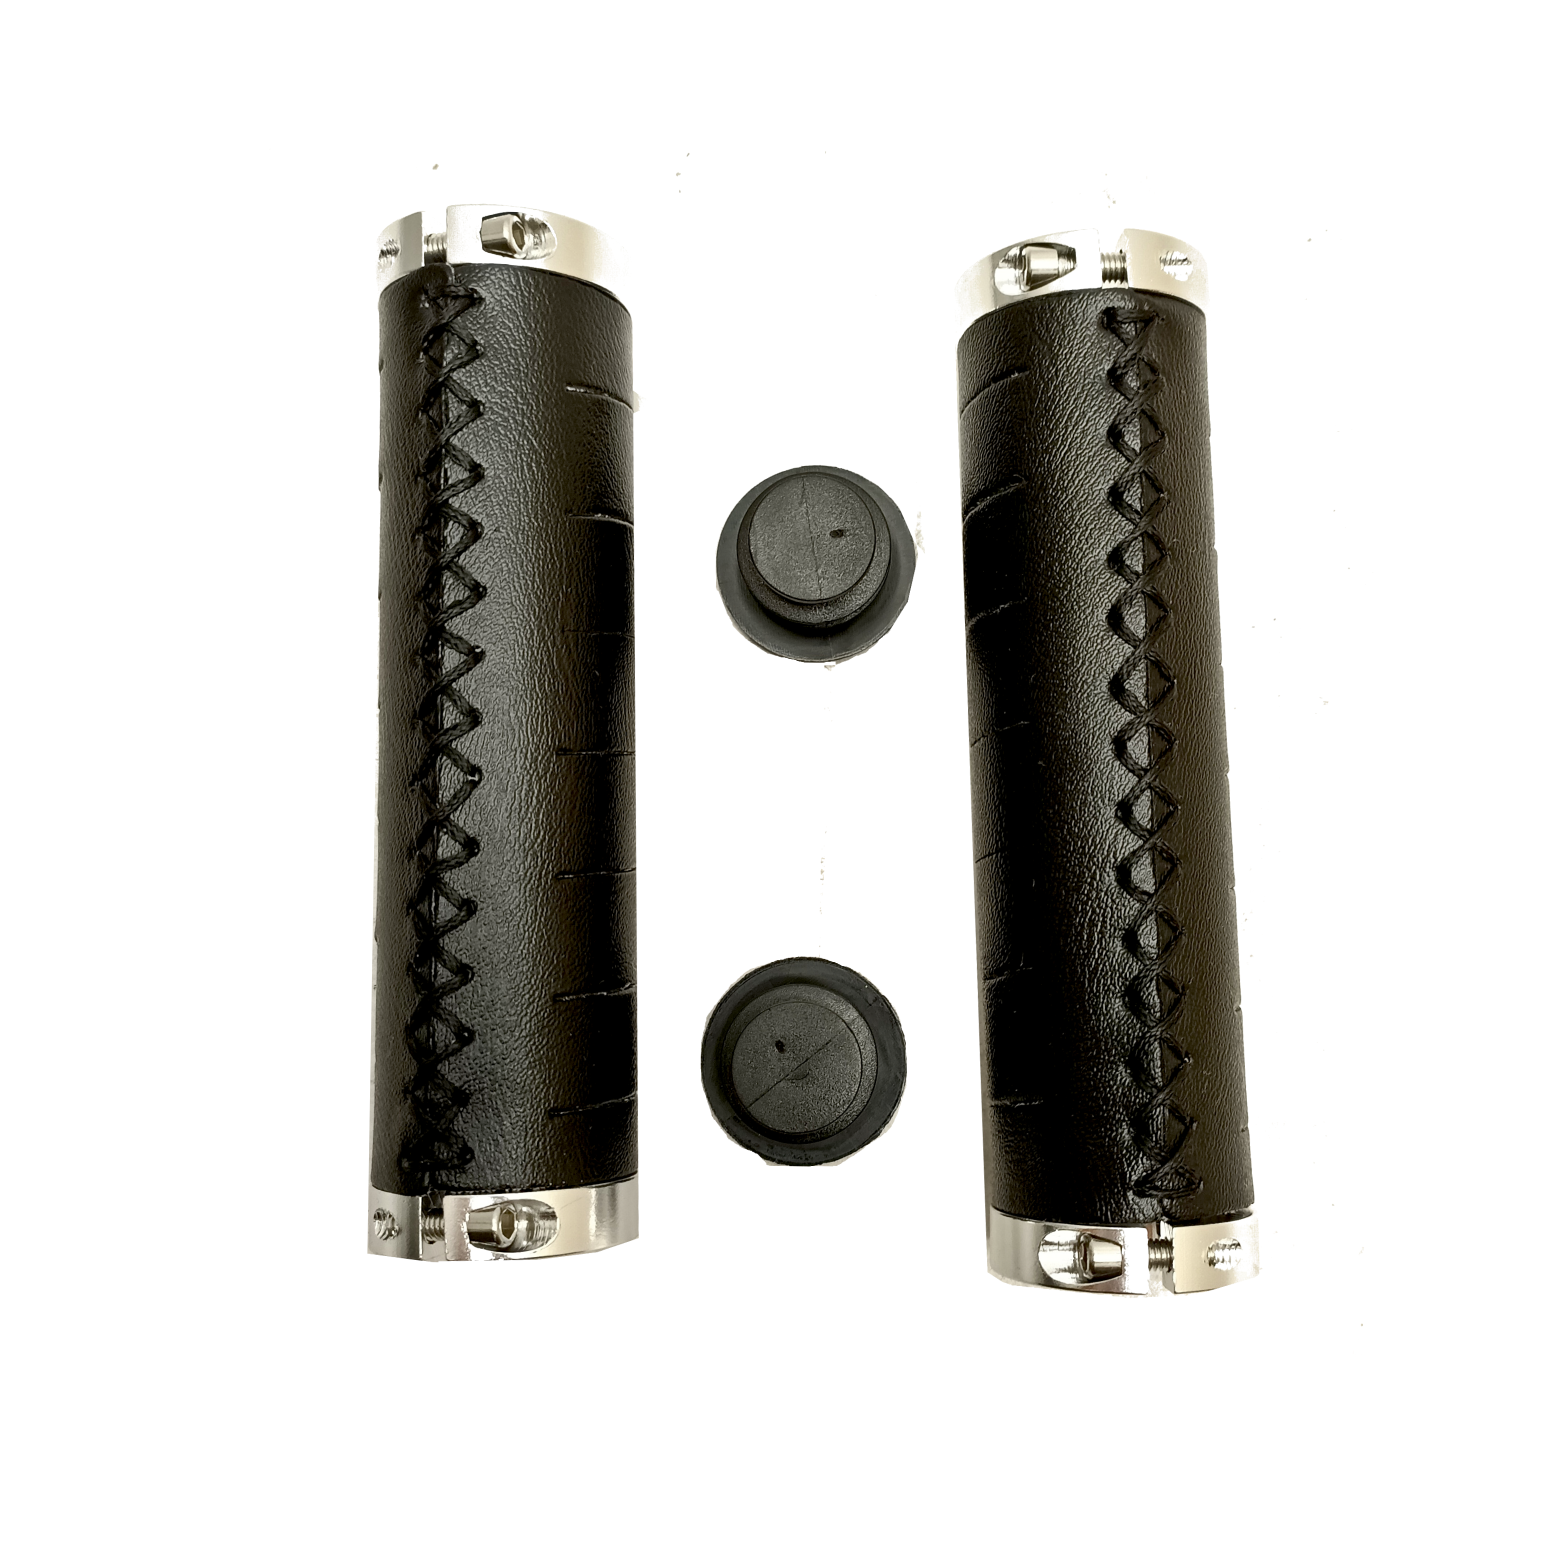 Poignées FALKX, matière PU noire avec double anneau de verrouillage, 130mm, emballage atelier